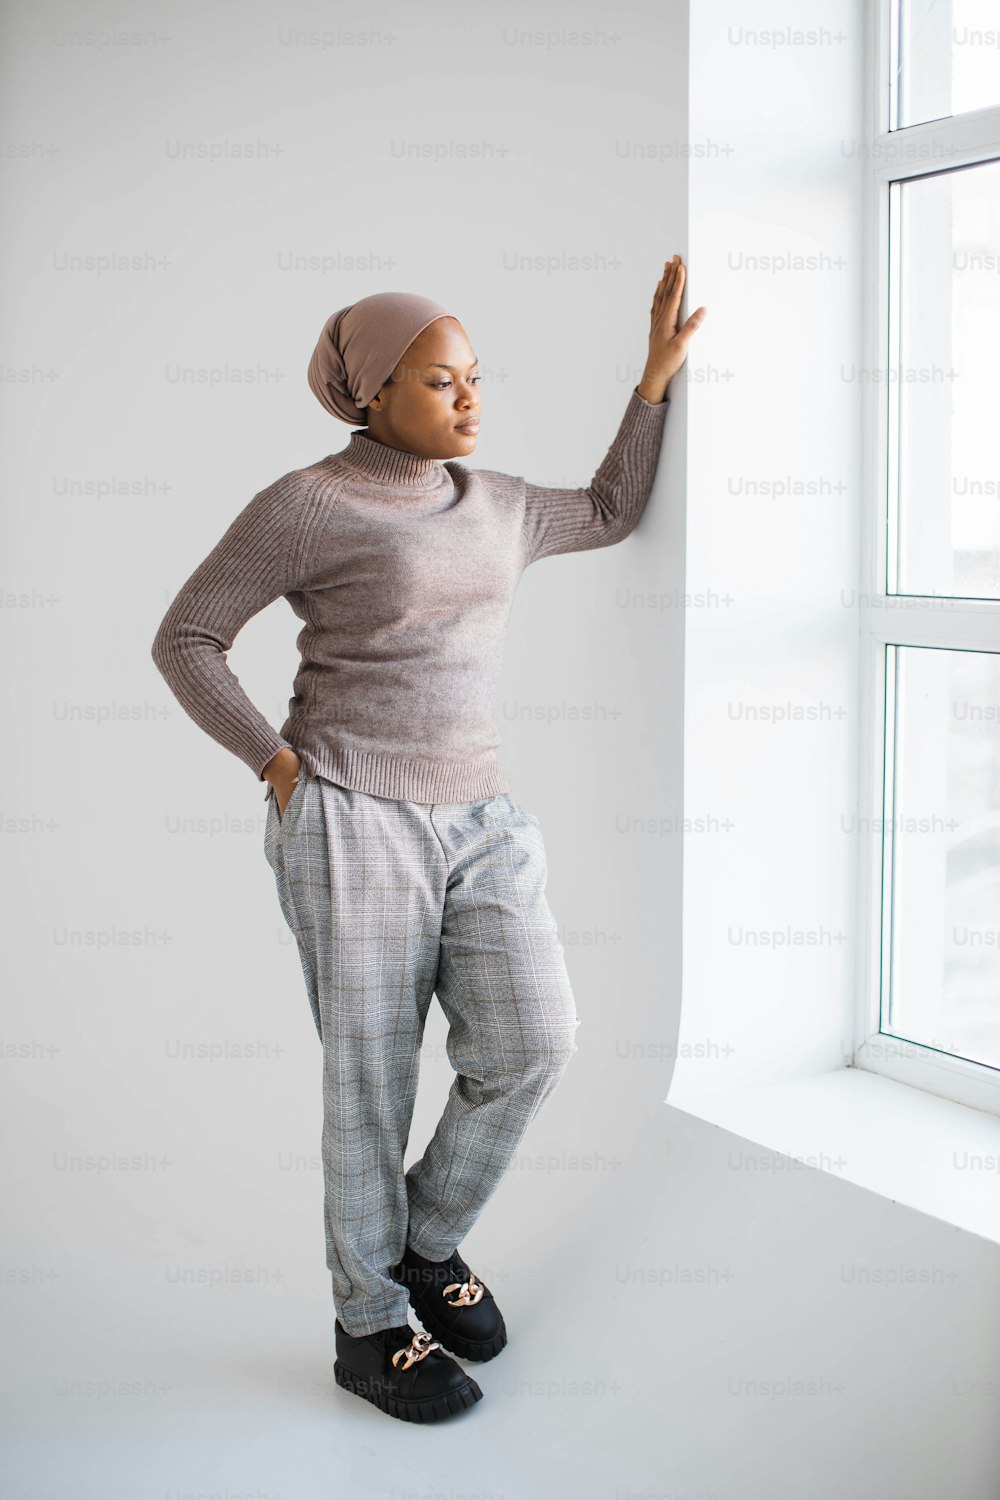 Attraente donna musulmana afroamericana in foulard e abiti casual in piedi in studio con sfondo bianco e guardando la finestra. Concetto di persone e stili di vita.